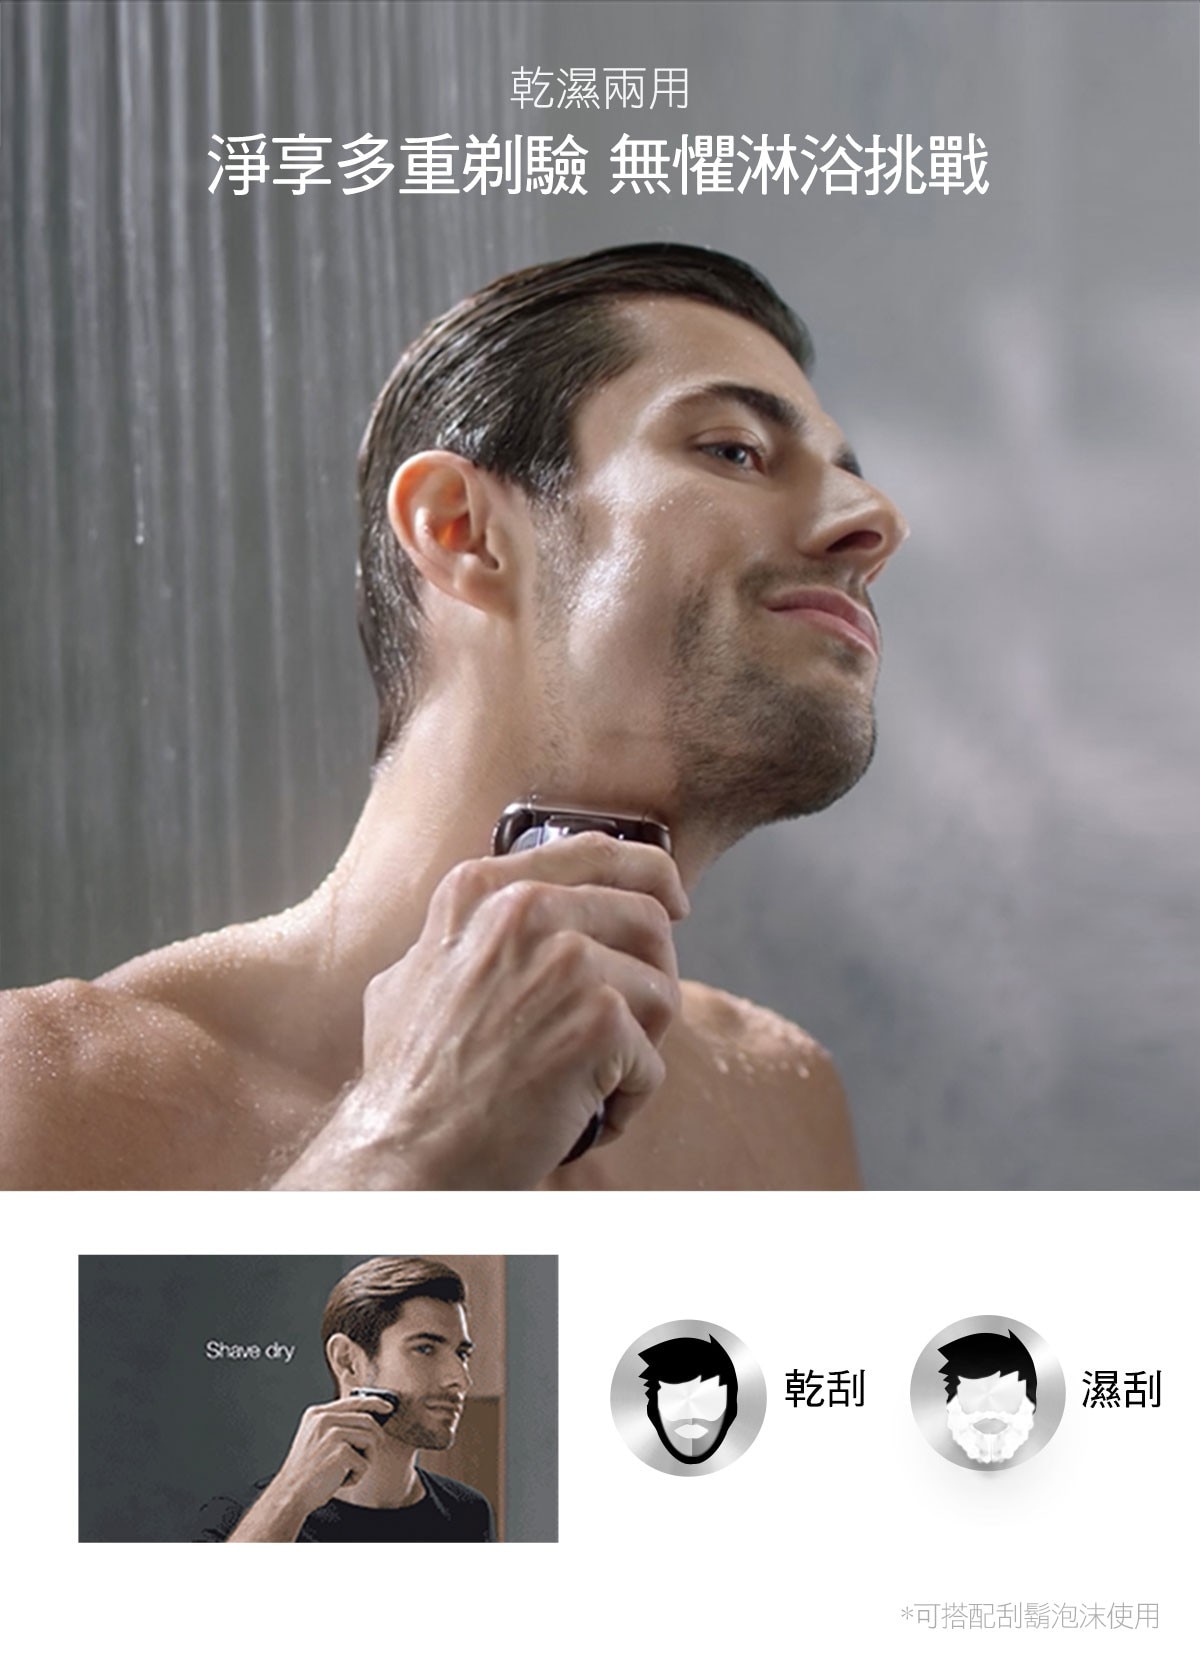 百靈新5系列電鬍刀，8D多角度刀頭，LED螢幕顯示電池、旅行鎖定狀態，三刀頭刮鬍系統，同時刮淨不同長度鬍鬚，鬢角刀，向上一推，全機身防水設計，可使用水快速清洗，乾濕兩用，可淋浴時搭配刮鬍泡使用，快充5分鐘，可支援一次無線刮鬍。